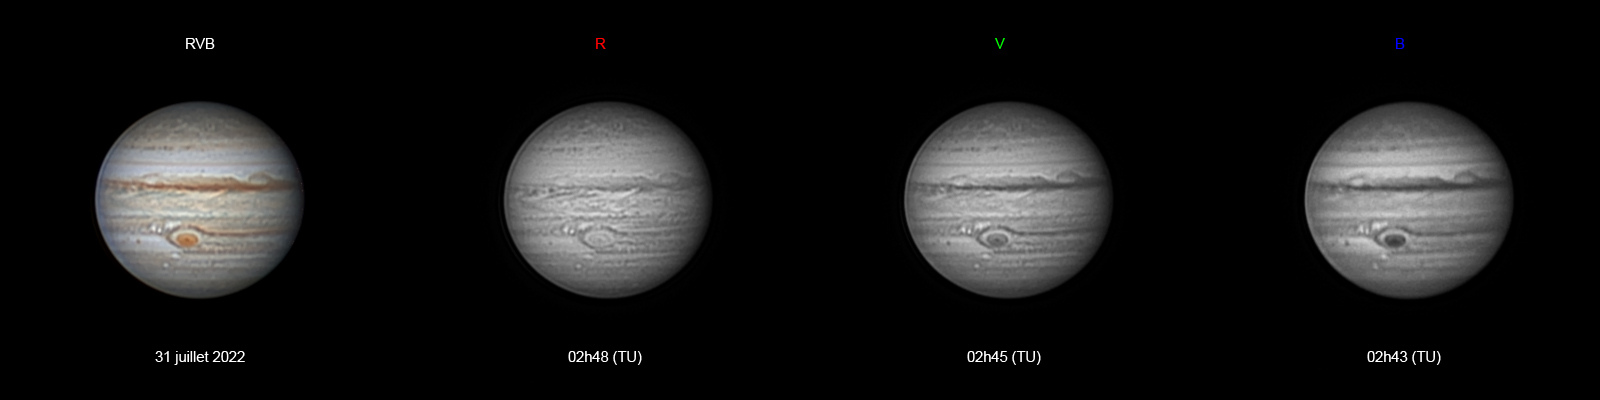 Jupiter-20220731-ba-RVB-Planche-AS.jpg.85c649b827519aa0010b4c4ed04c5280.jpg